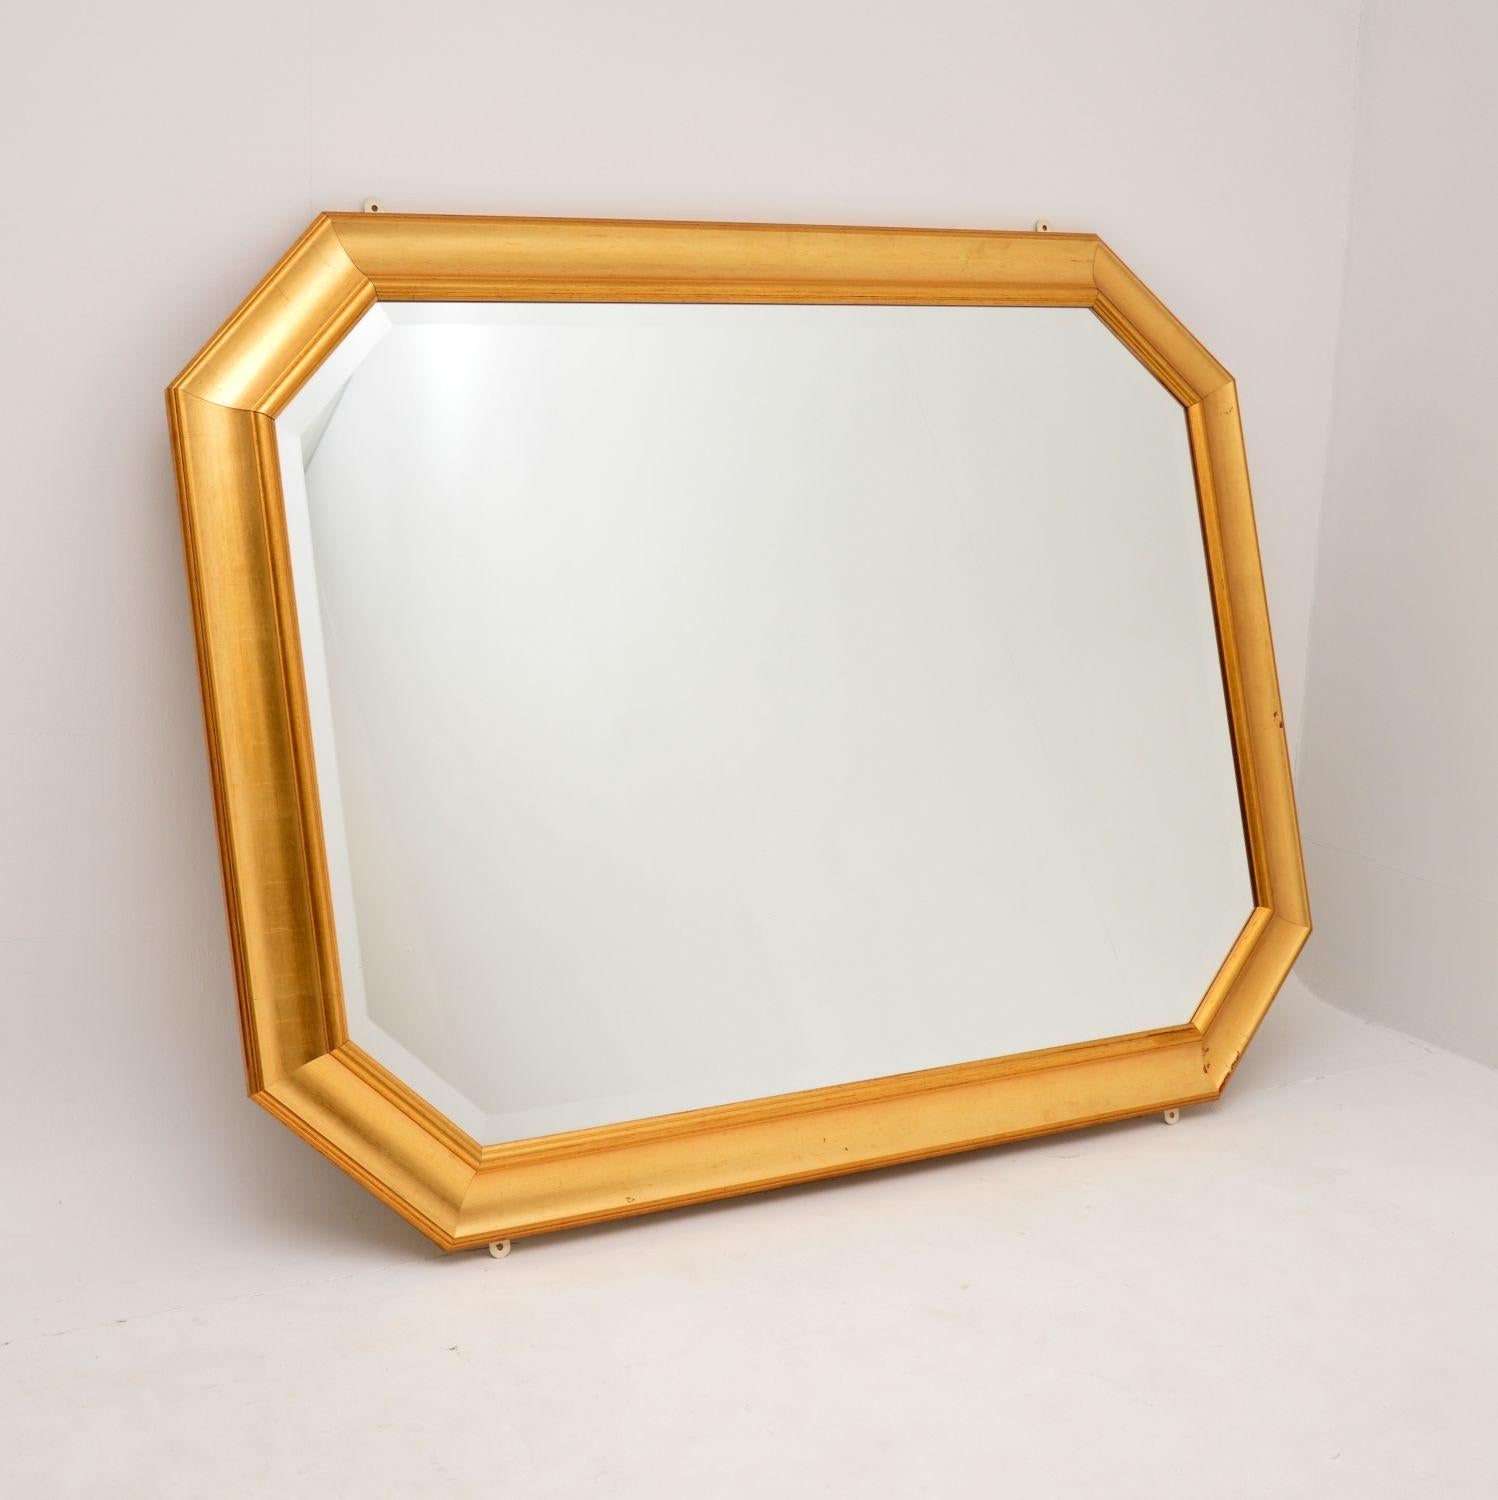 Un miroir vintage en bois doré de grande qualité et très grand. Il a été fabriqué en Angleterre, il date des années 1970-80 environ.

Il est magnifiquement réalisé et est très impressionnant. Il est doté d'un verre biseauté qui est en excellent